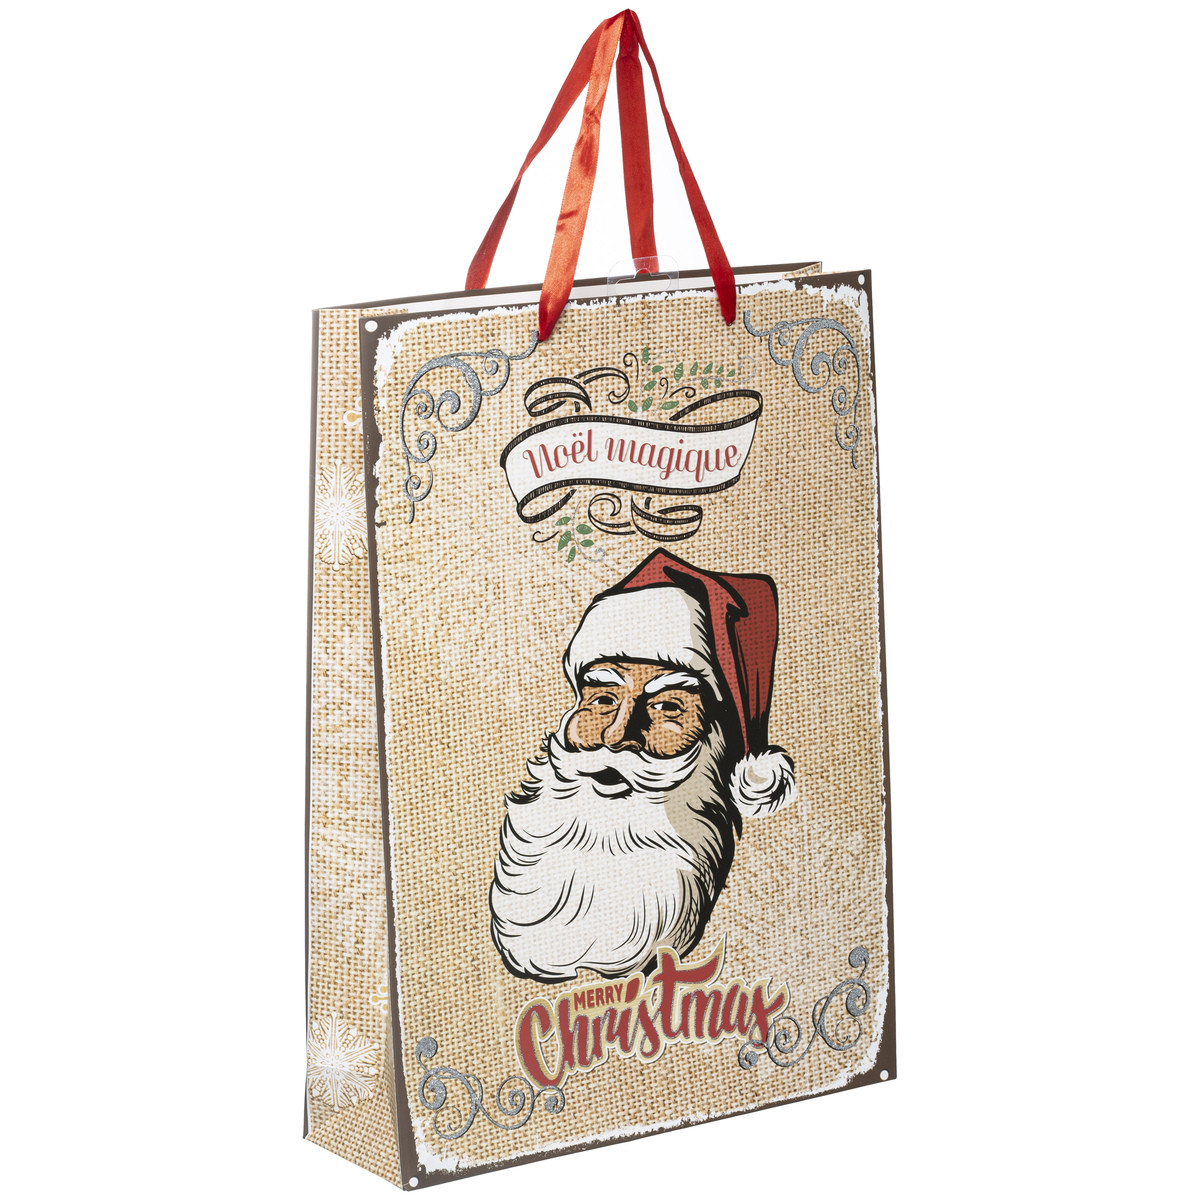 Sac Cadeau grand modèle Père Noël - Boites, sacs cadeaux, papiers